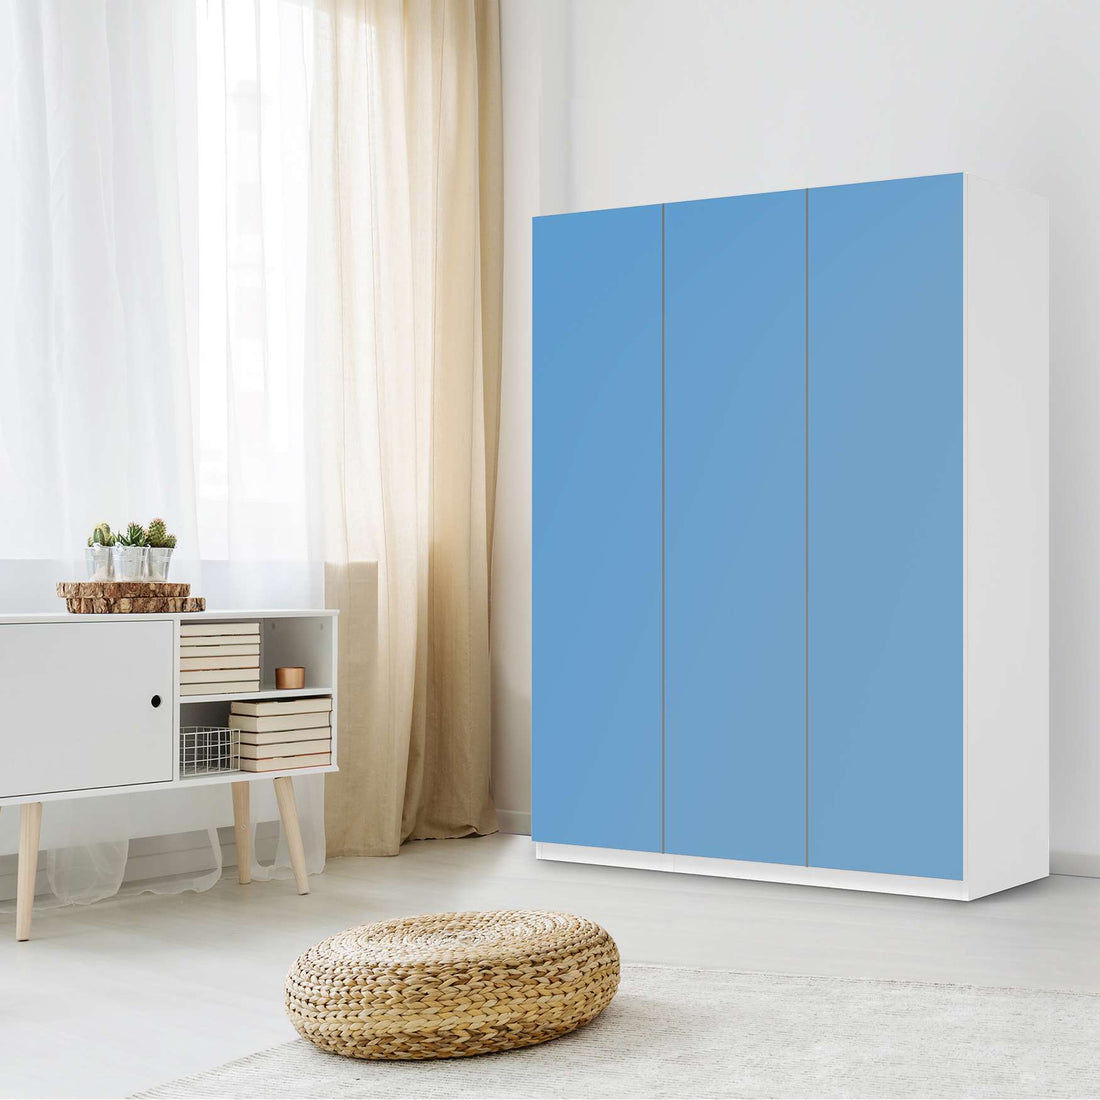 Folie für Möbel Blau Light - IKEA Pax Schrank 201 cm Höhe - 3 Türen - Schlafzimmer